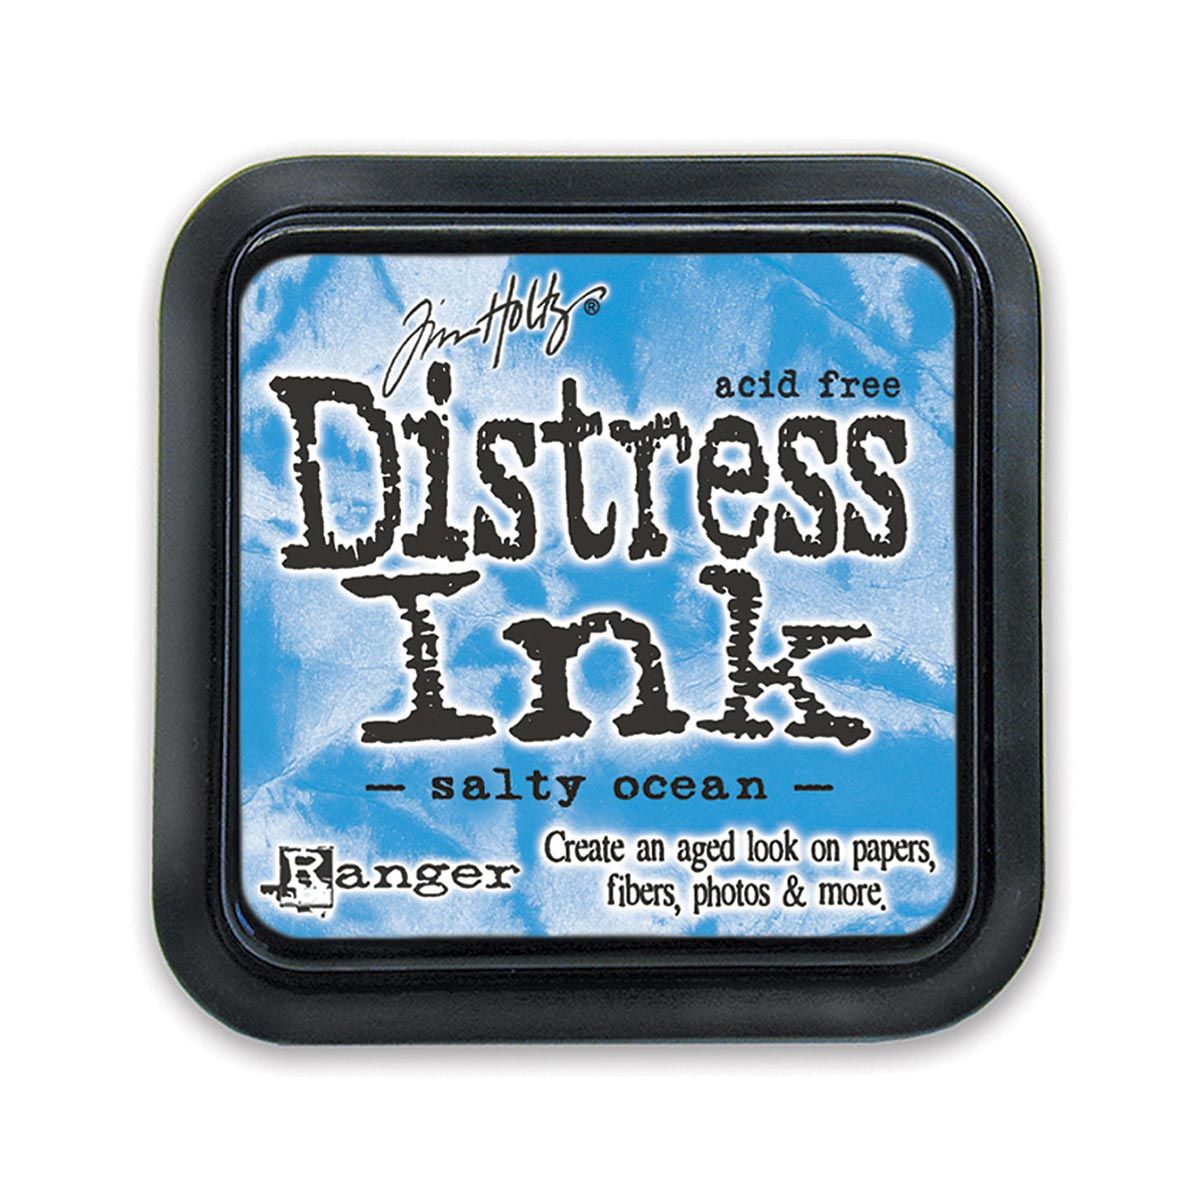 Tim Holtz Mini Distress Ink Pad Salty Ocean 1x1 inch